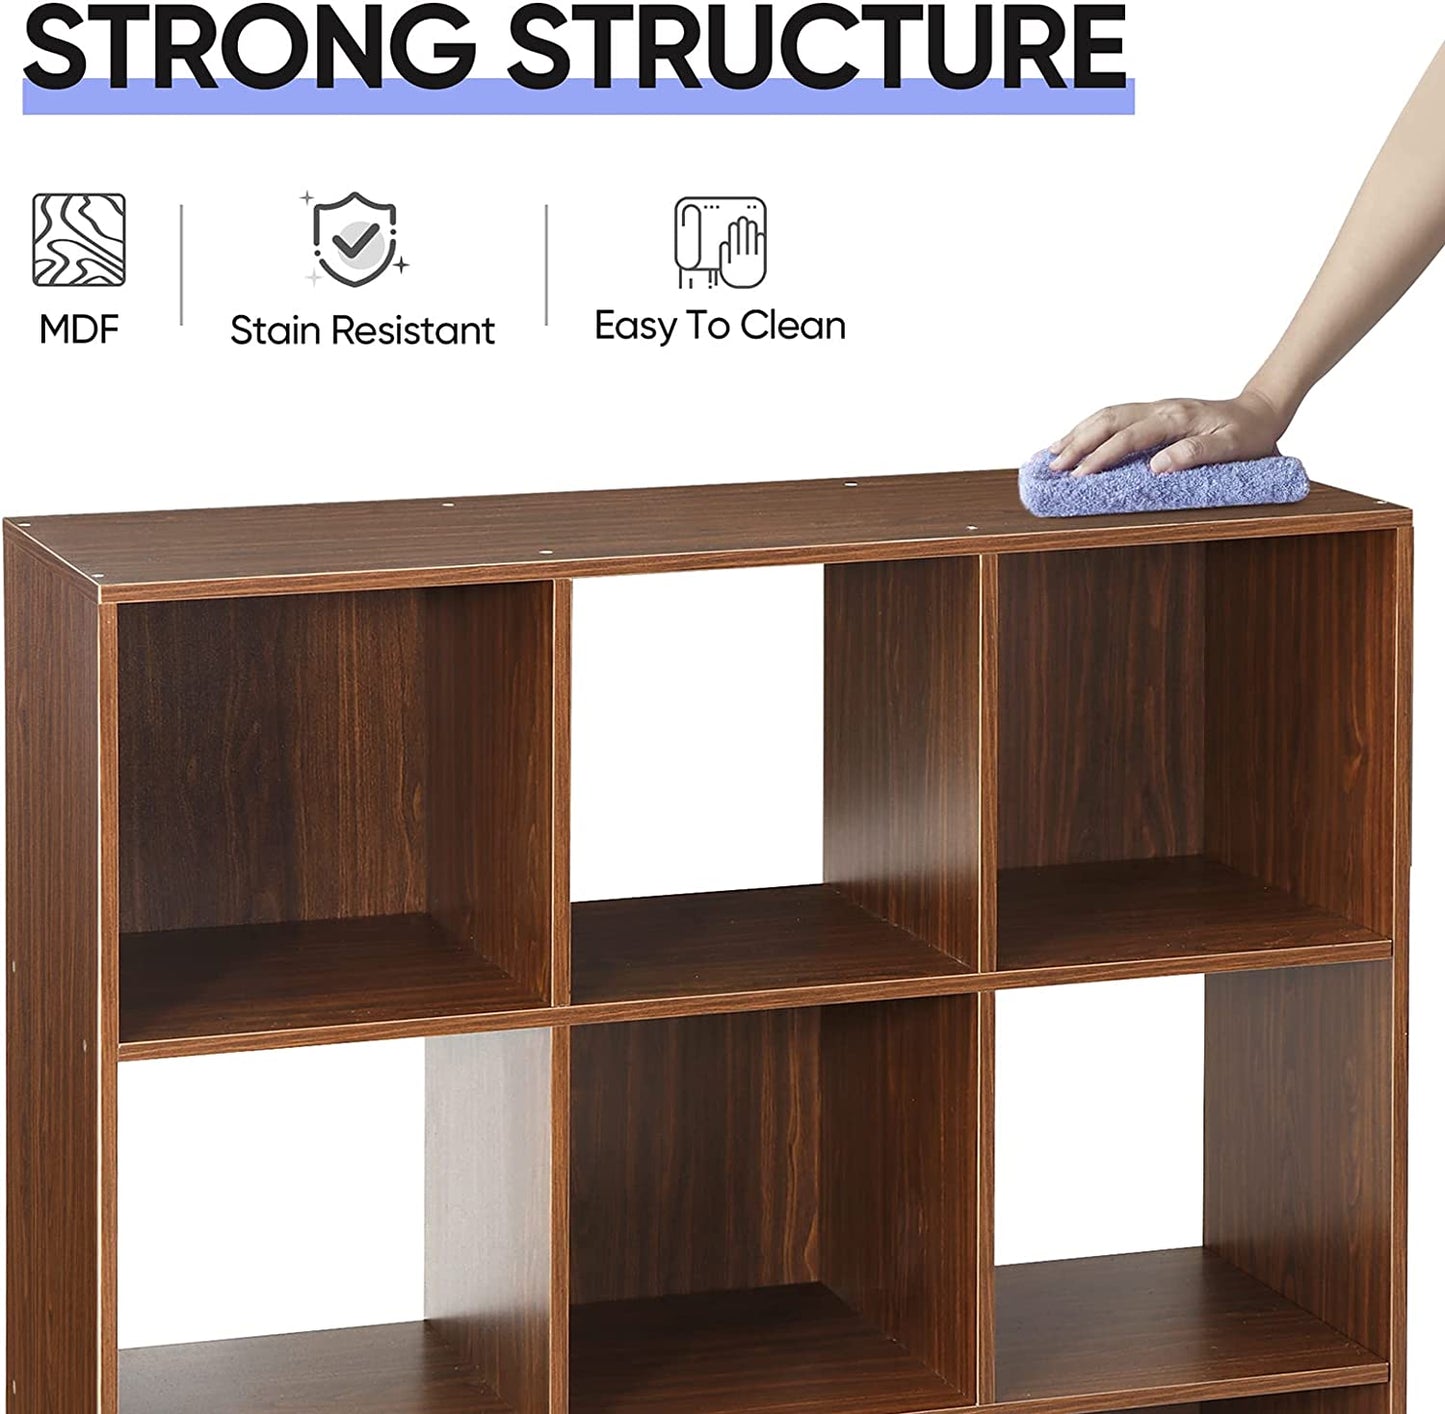 9 Cube Storage Organizer, Modular Storage Organizer Cabinet, 3-Tier Bookshelf Bookcase for Home Office